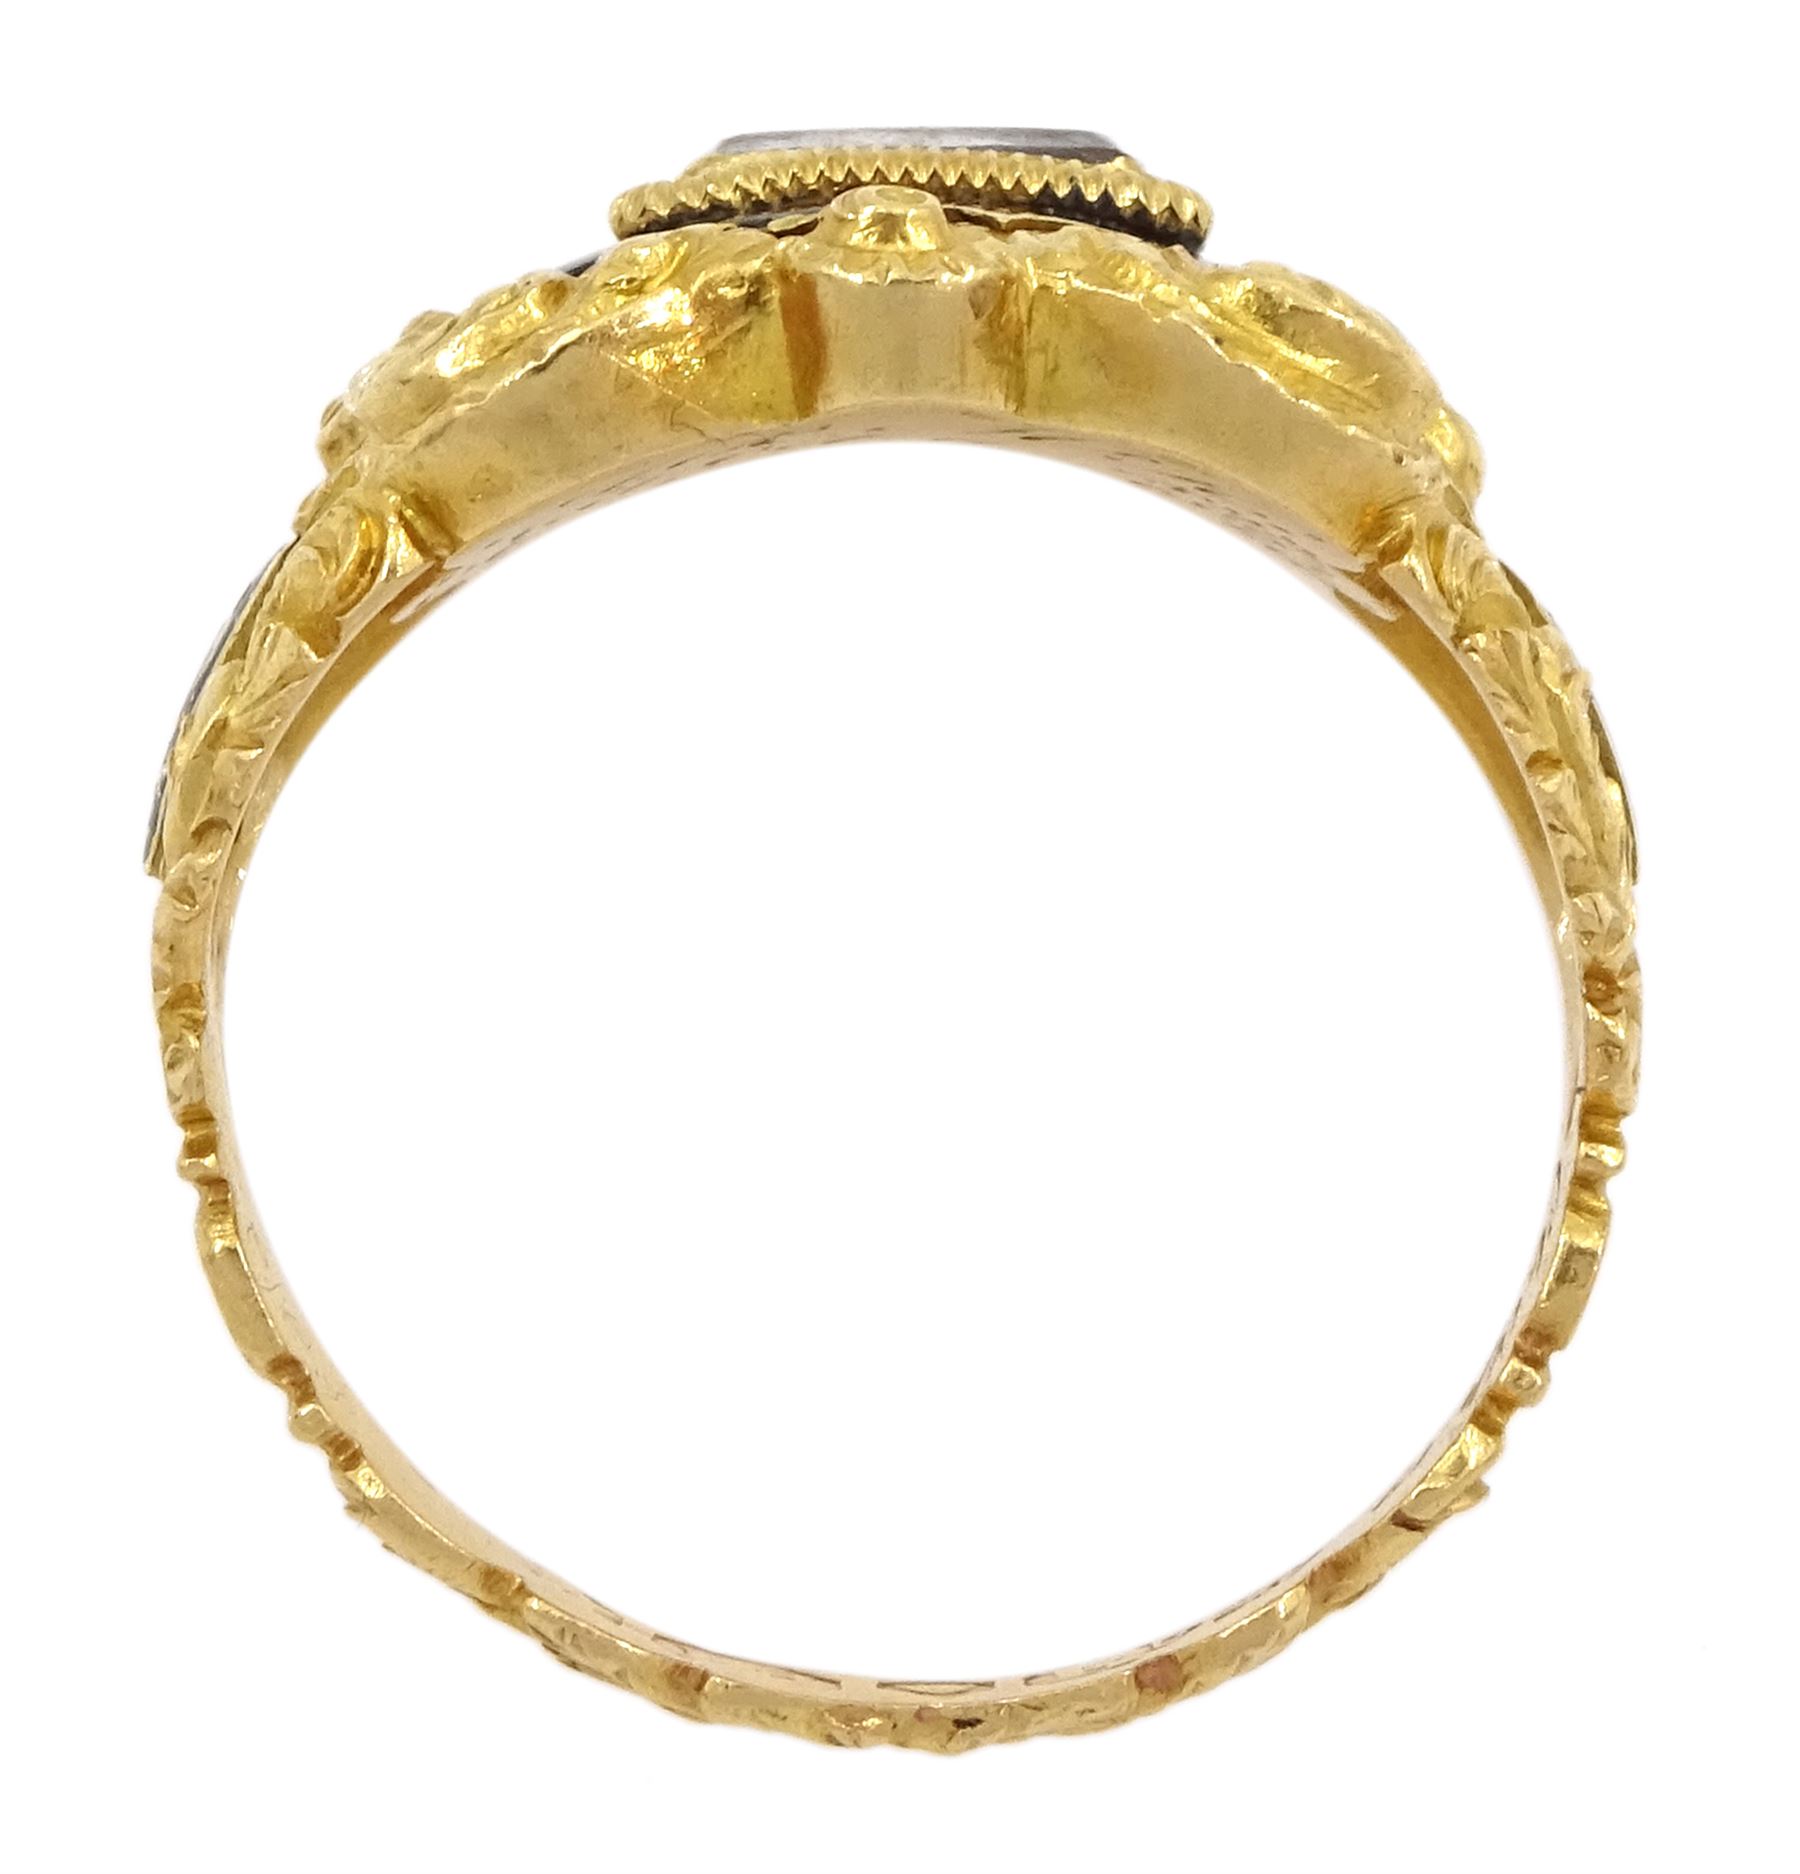 George IV 18ct gold black enamel and glazed mourning ring - Image 5 of 5